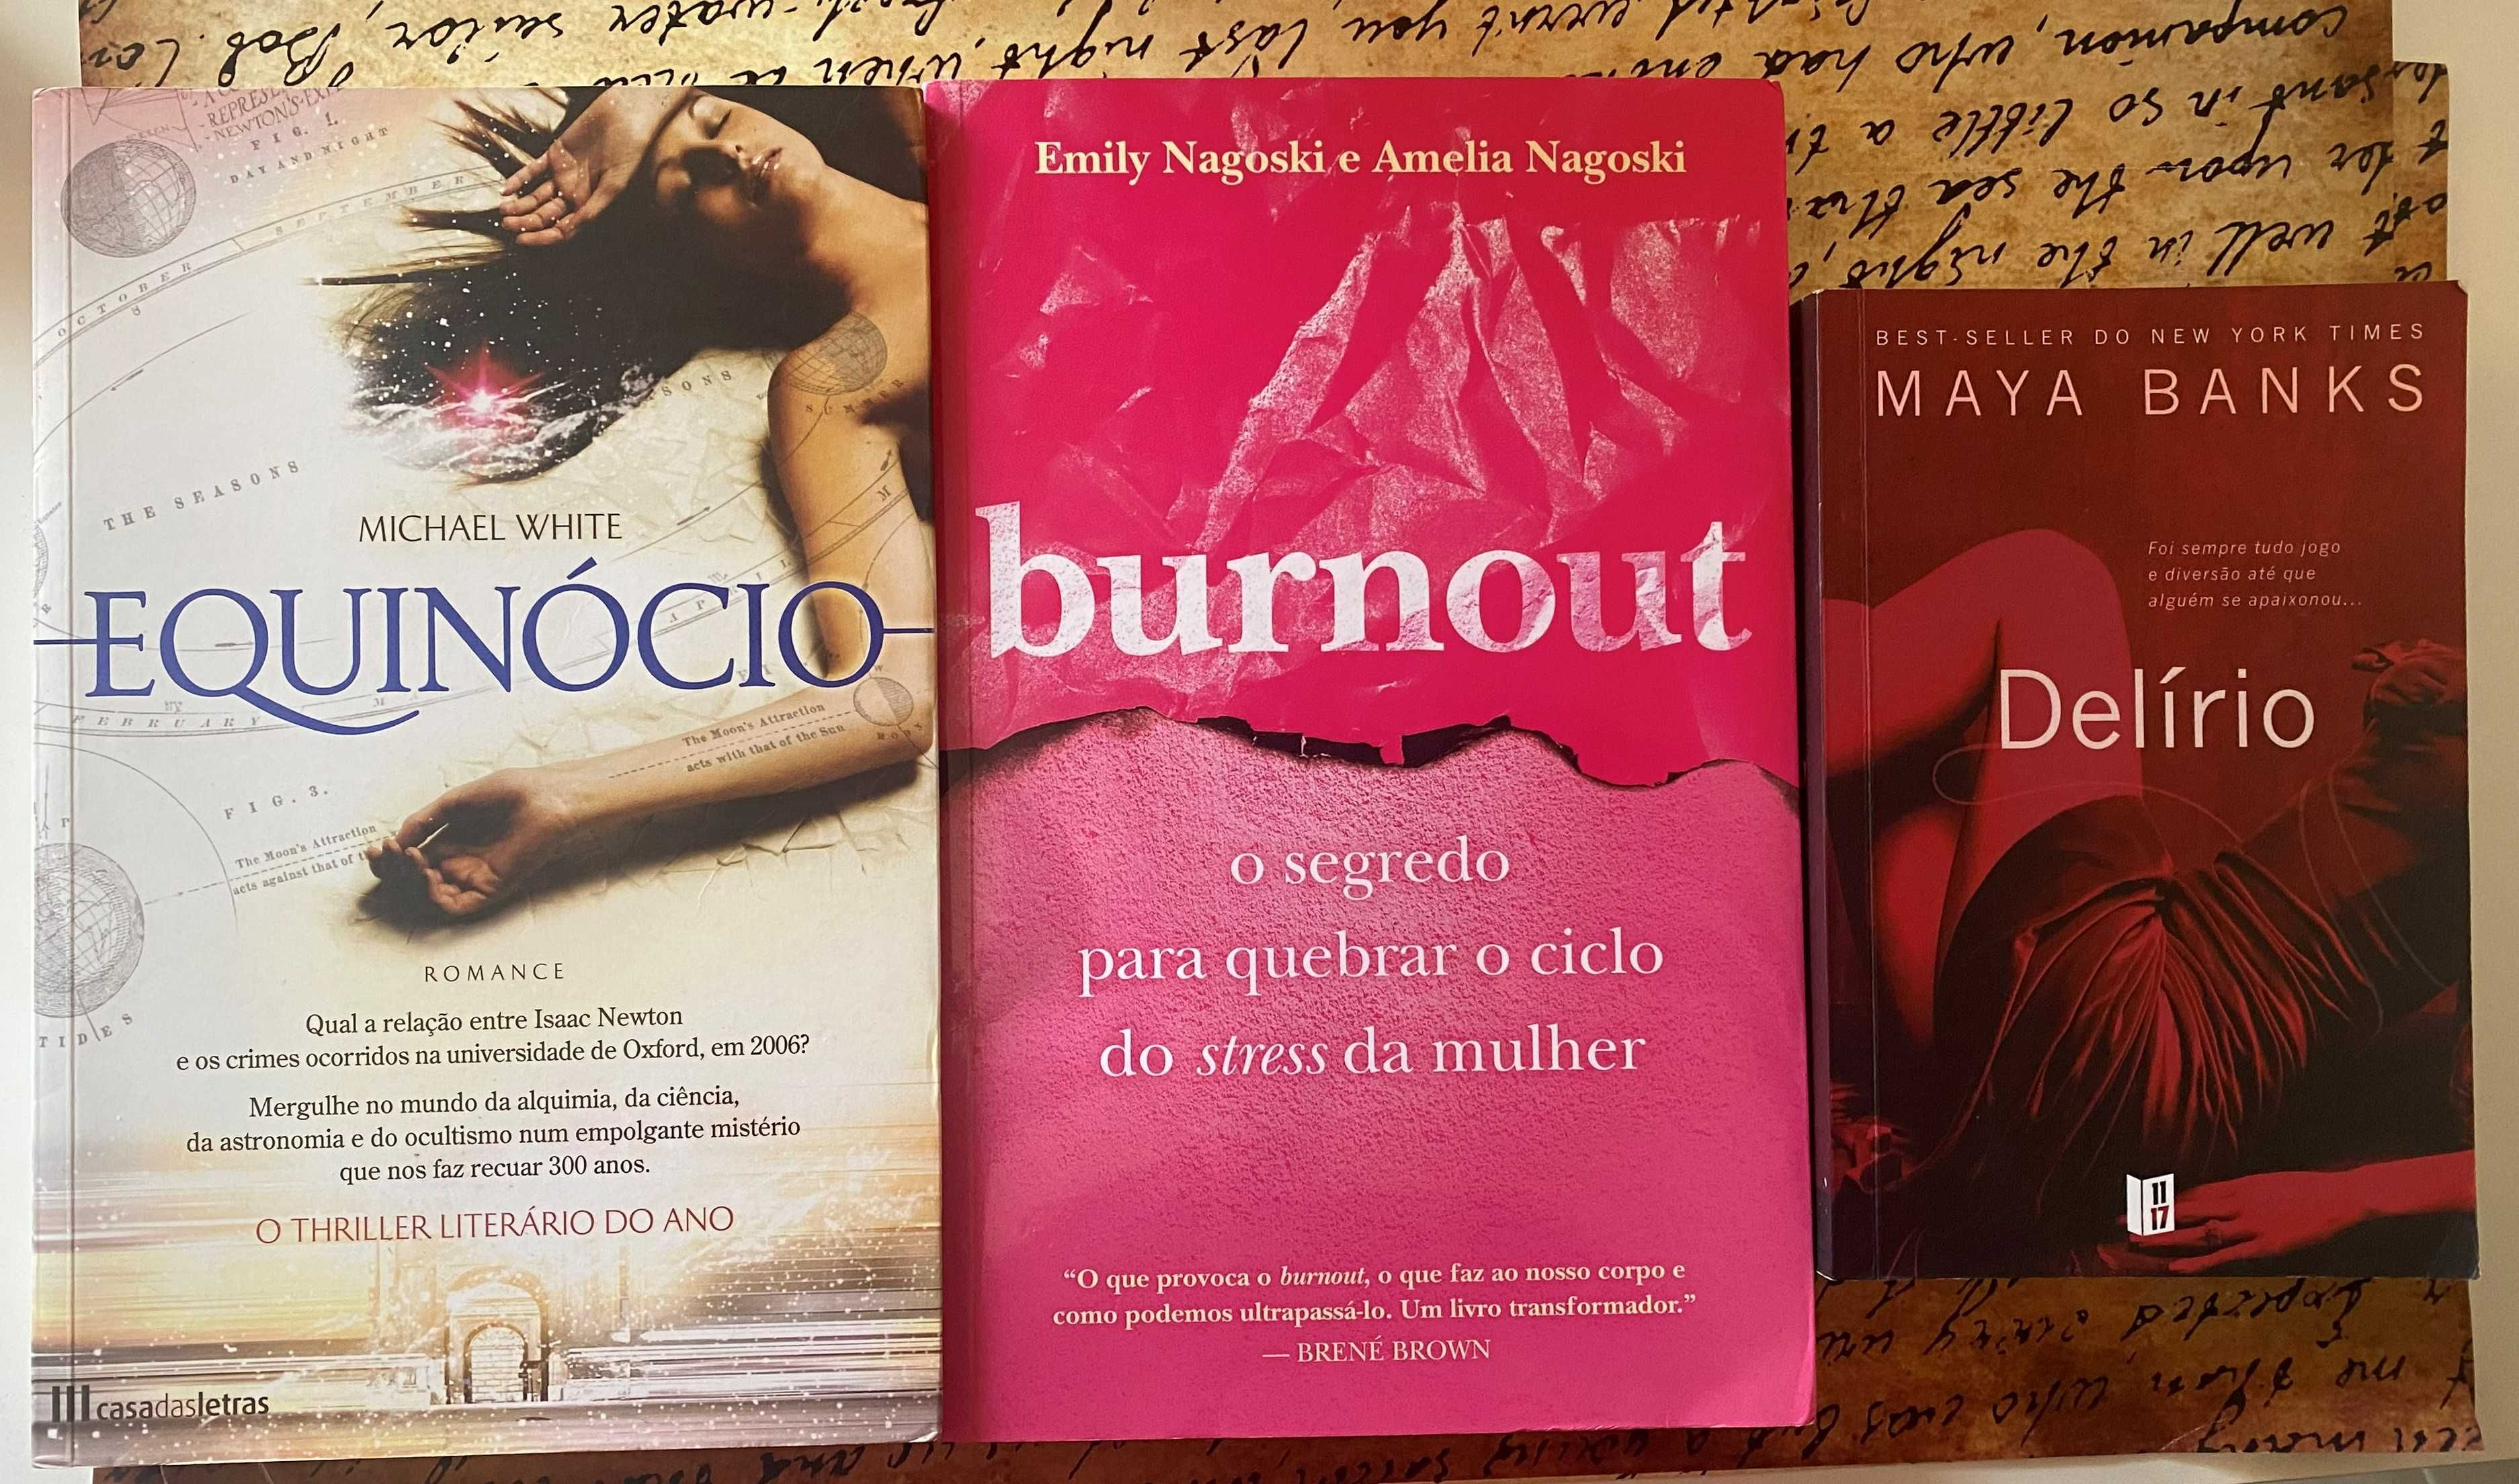 Livros em português - vários preços